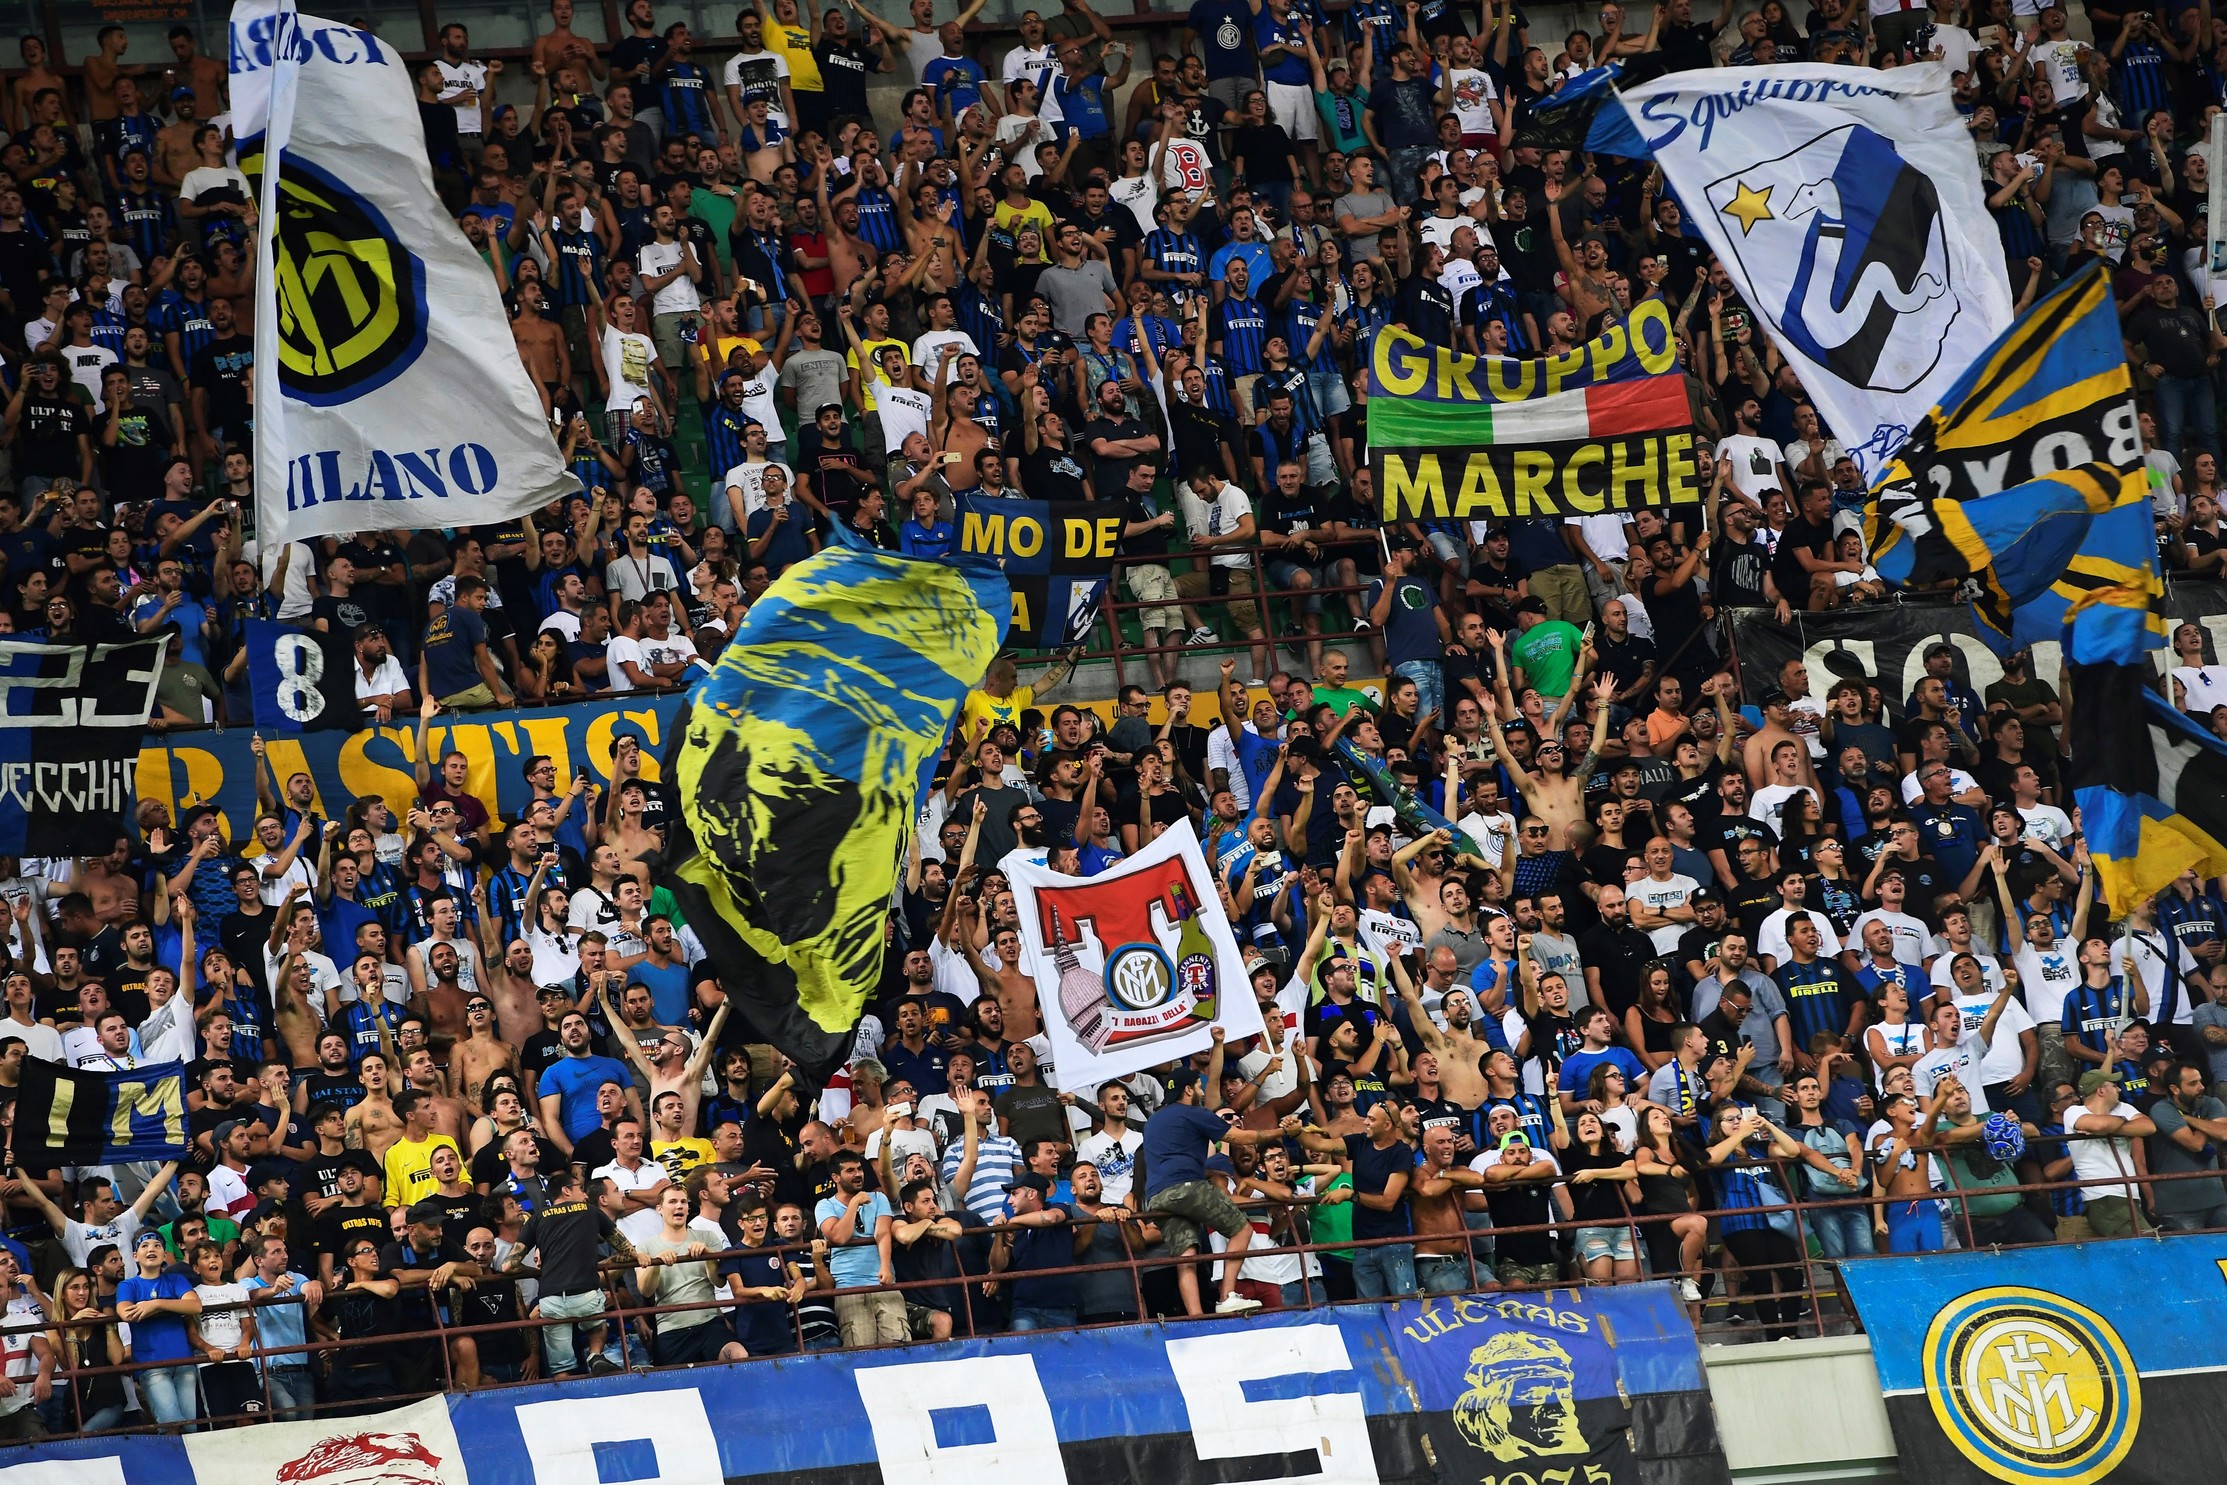 Morto tifoso dell’Inter negli scontri pre-partita contro il Napoli. Questore: “Trasferte vietate e chiusa curva nerazzurra”